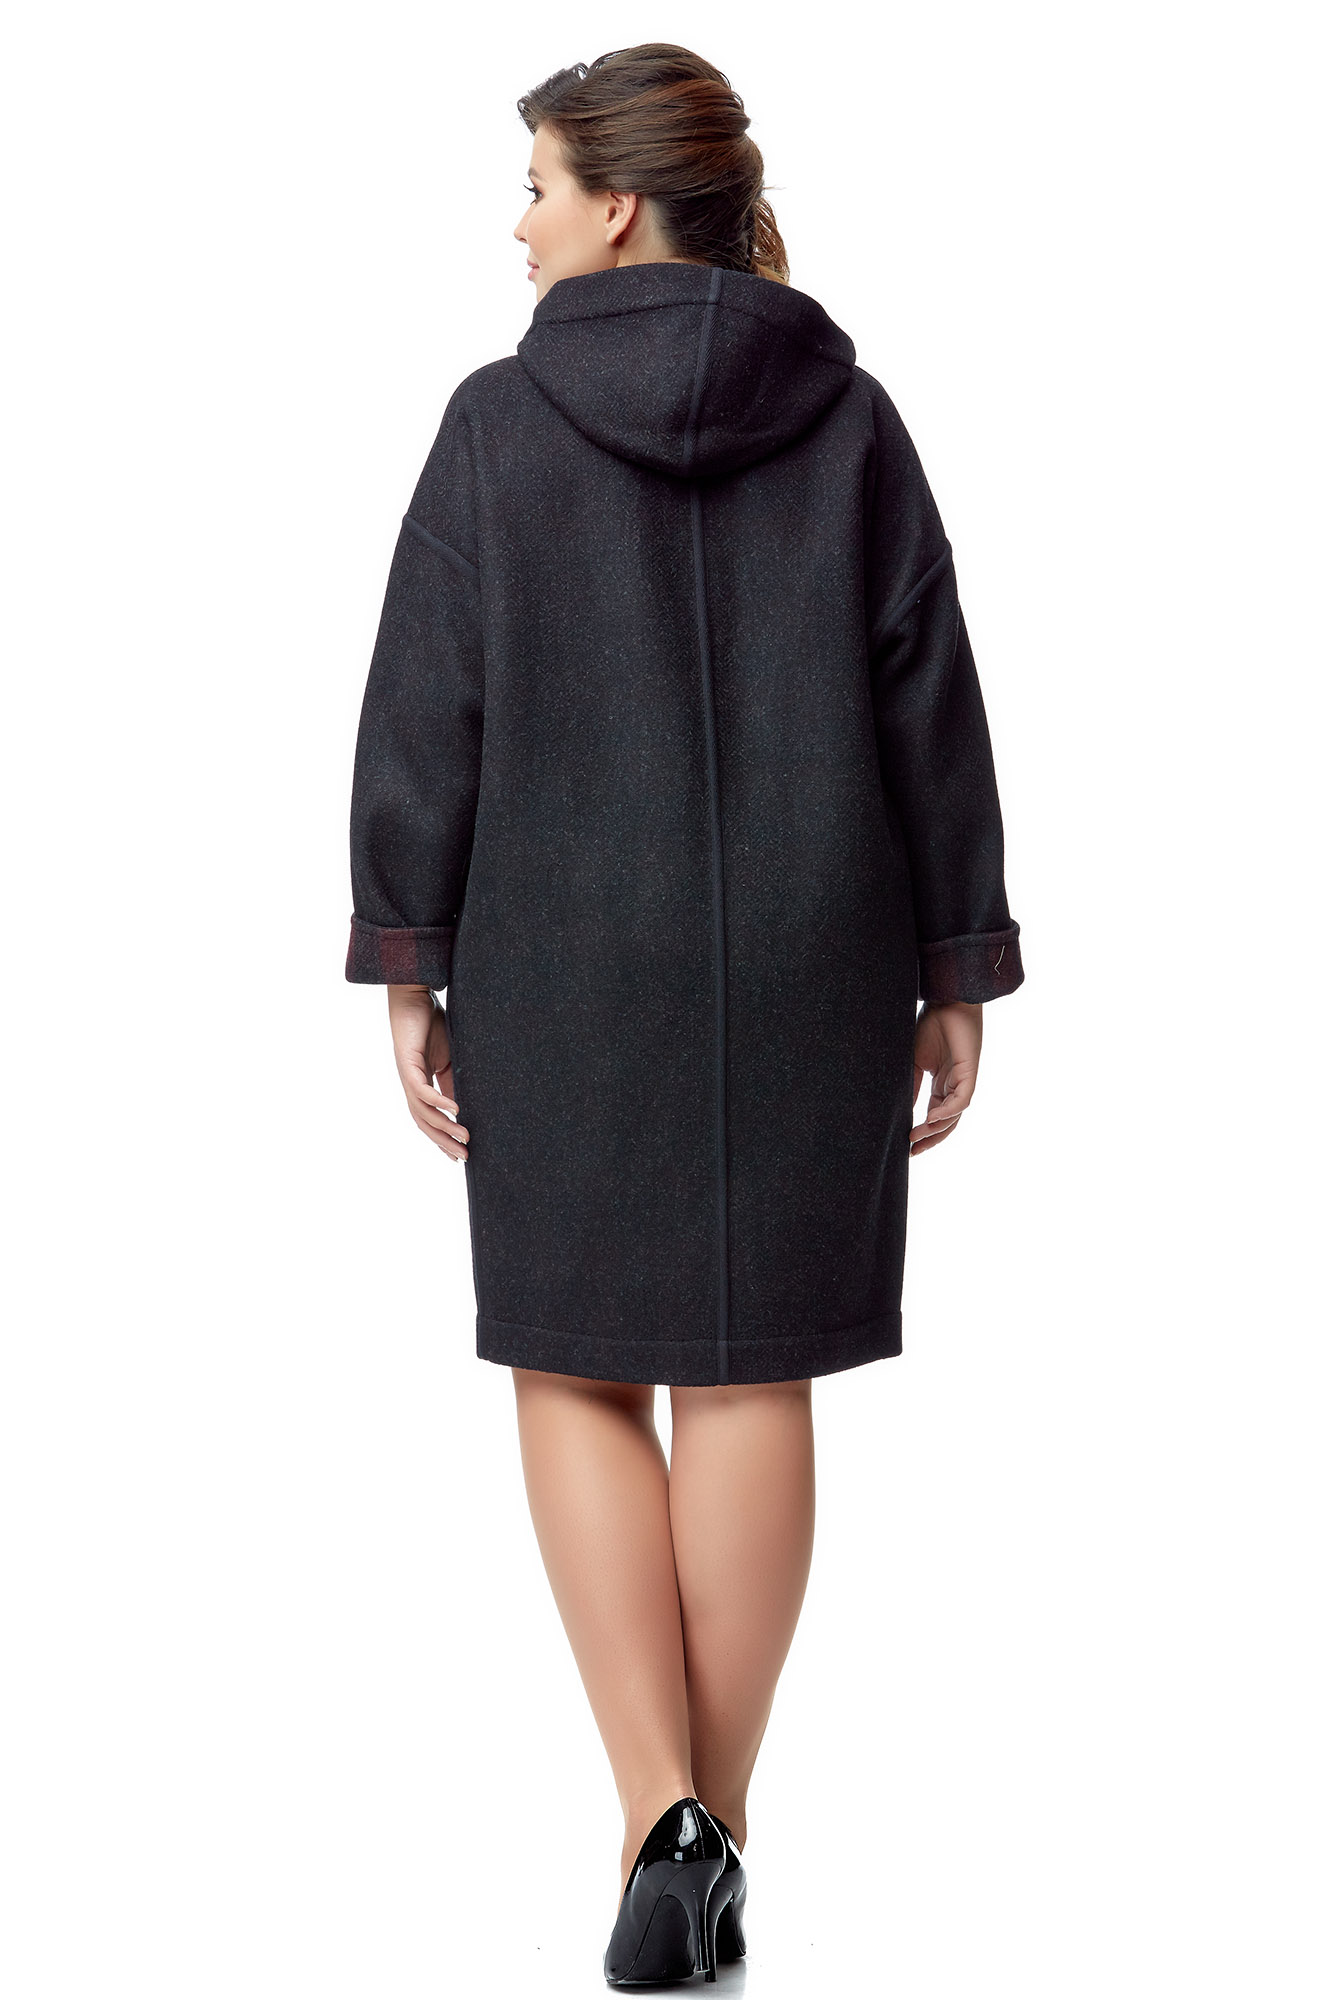 Женское пальто из текстиля с капюшоном 8000945-3